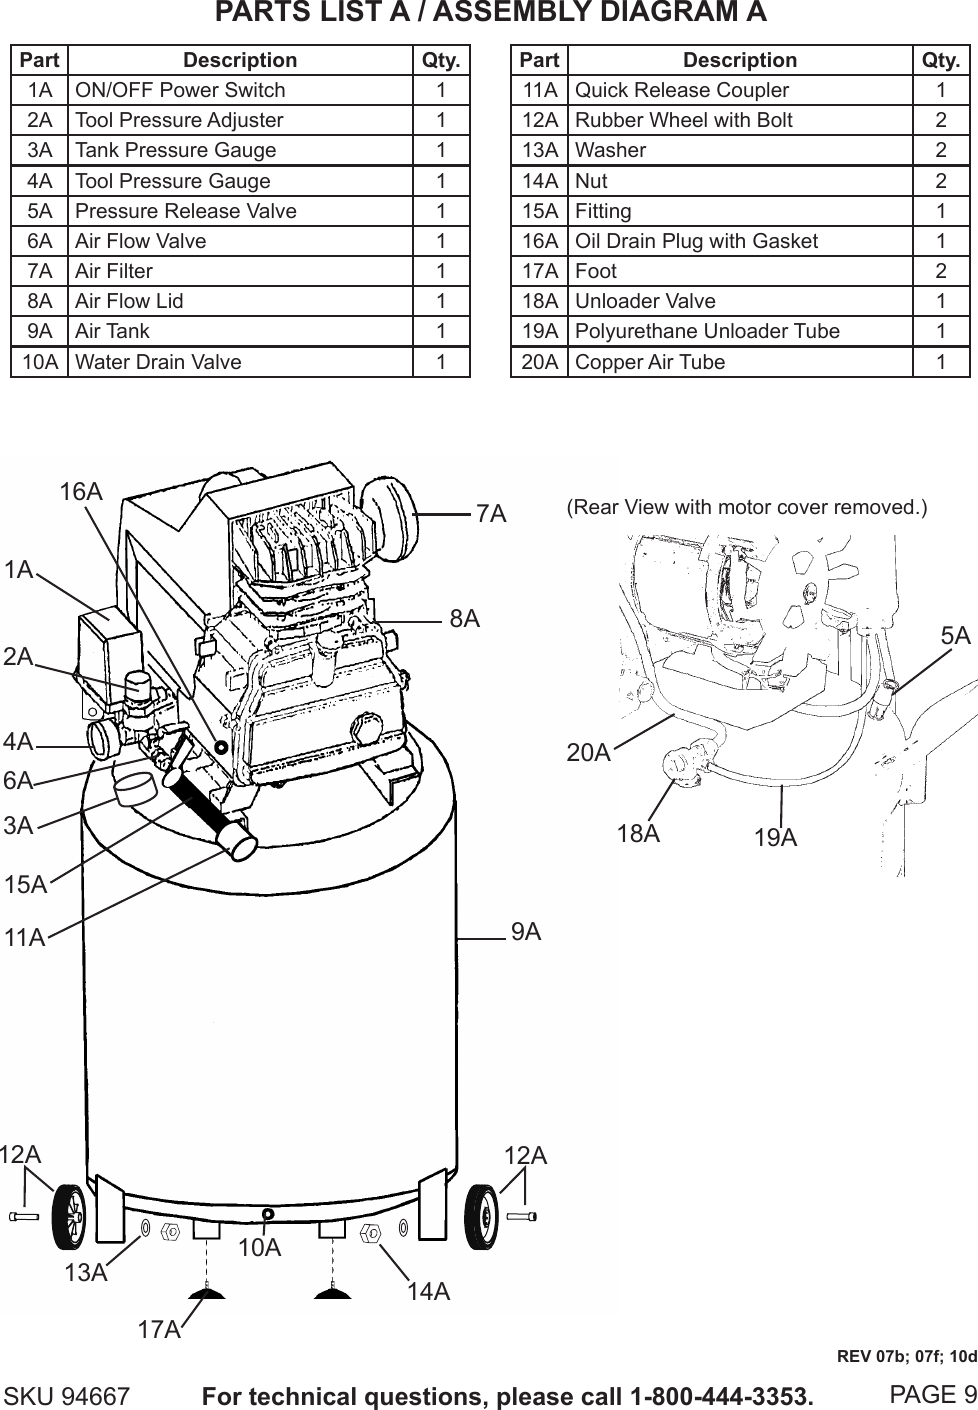 Central Pneumatic Air Compressor Parts Manual